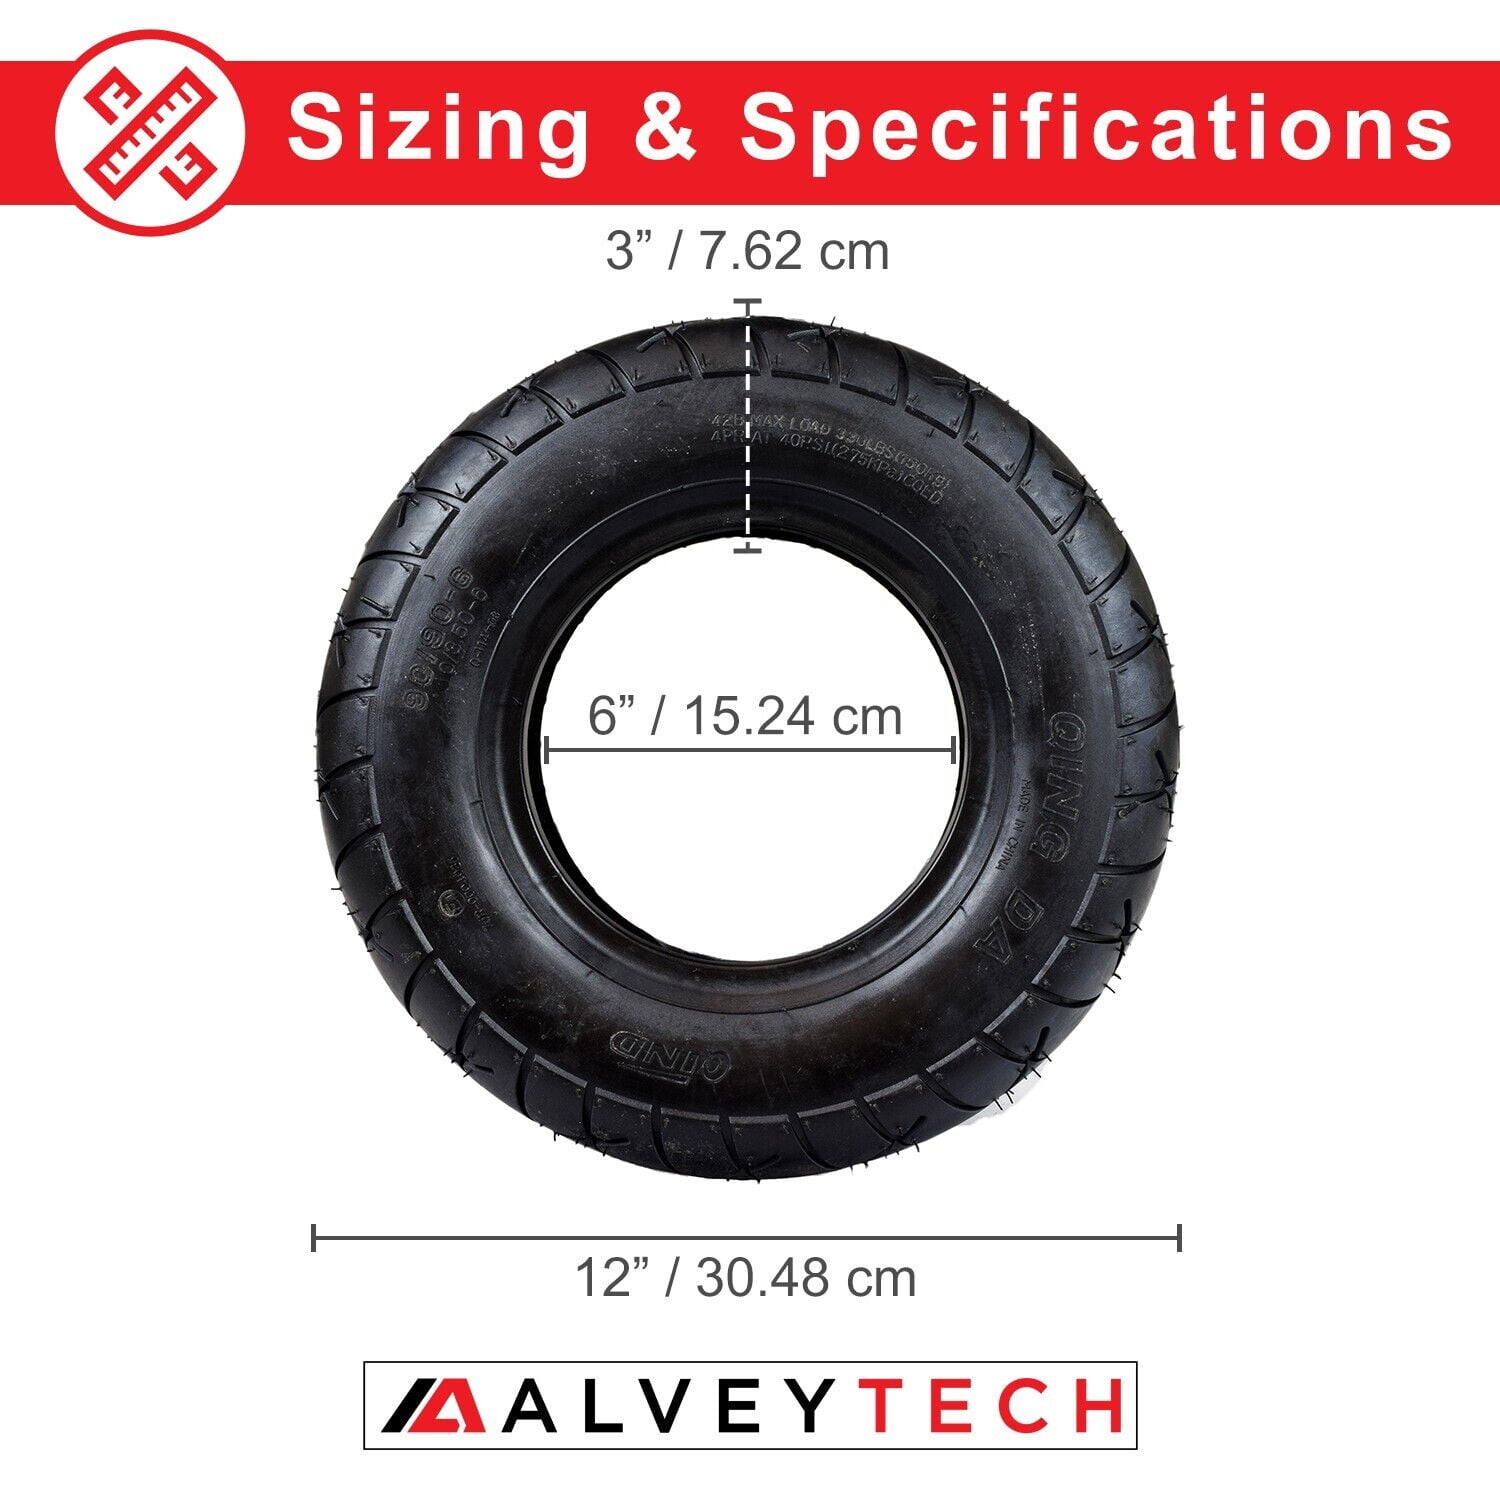 Atlas Inner Tube for Tire Sizes 4.10 x 3.50-6